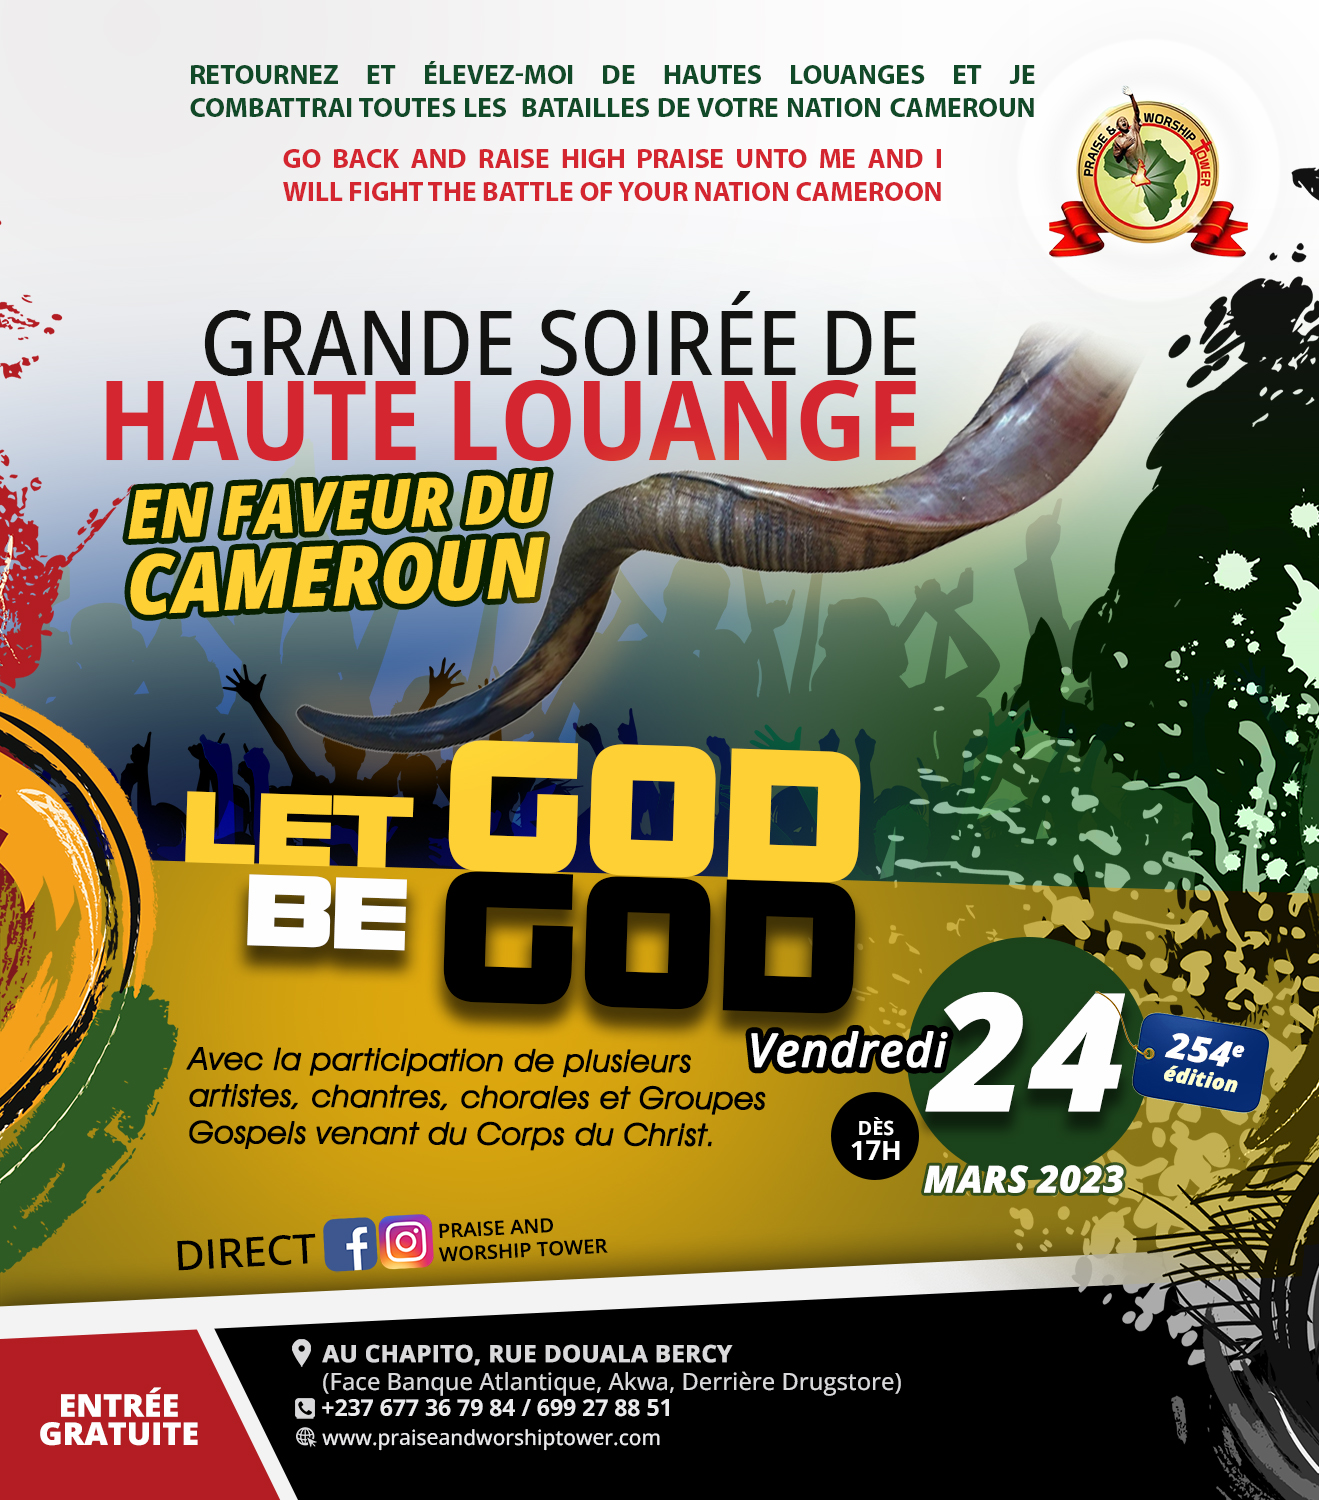 254e édition des soirées de hautes louanges en faveur du Cameroun